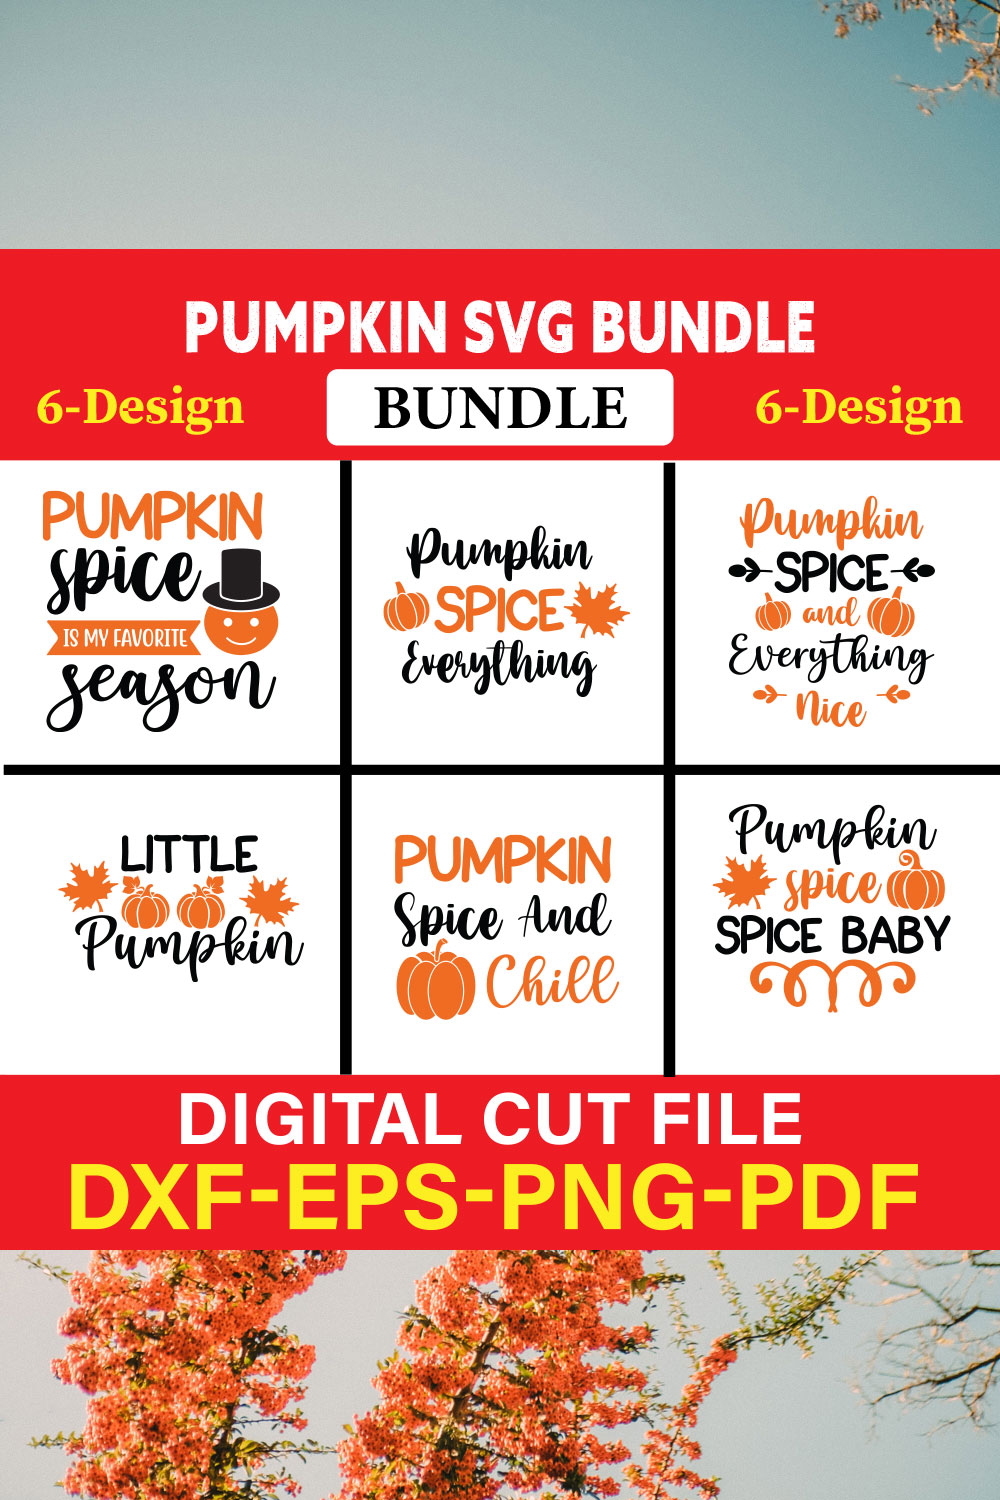 Pumpkin svg bundle T-shirt Design Bundle Vol-2 pinterest preview image.